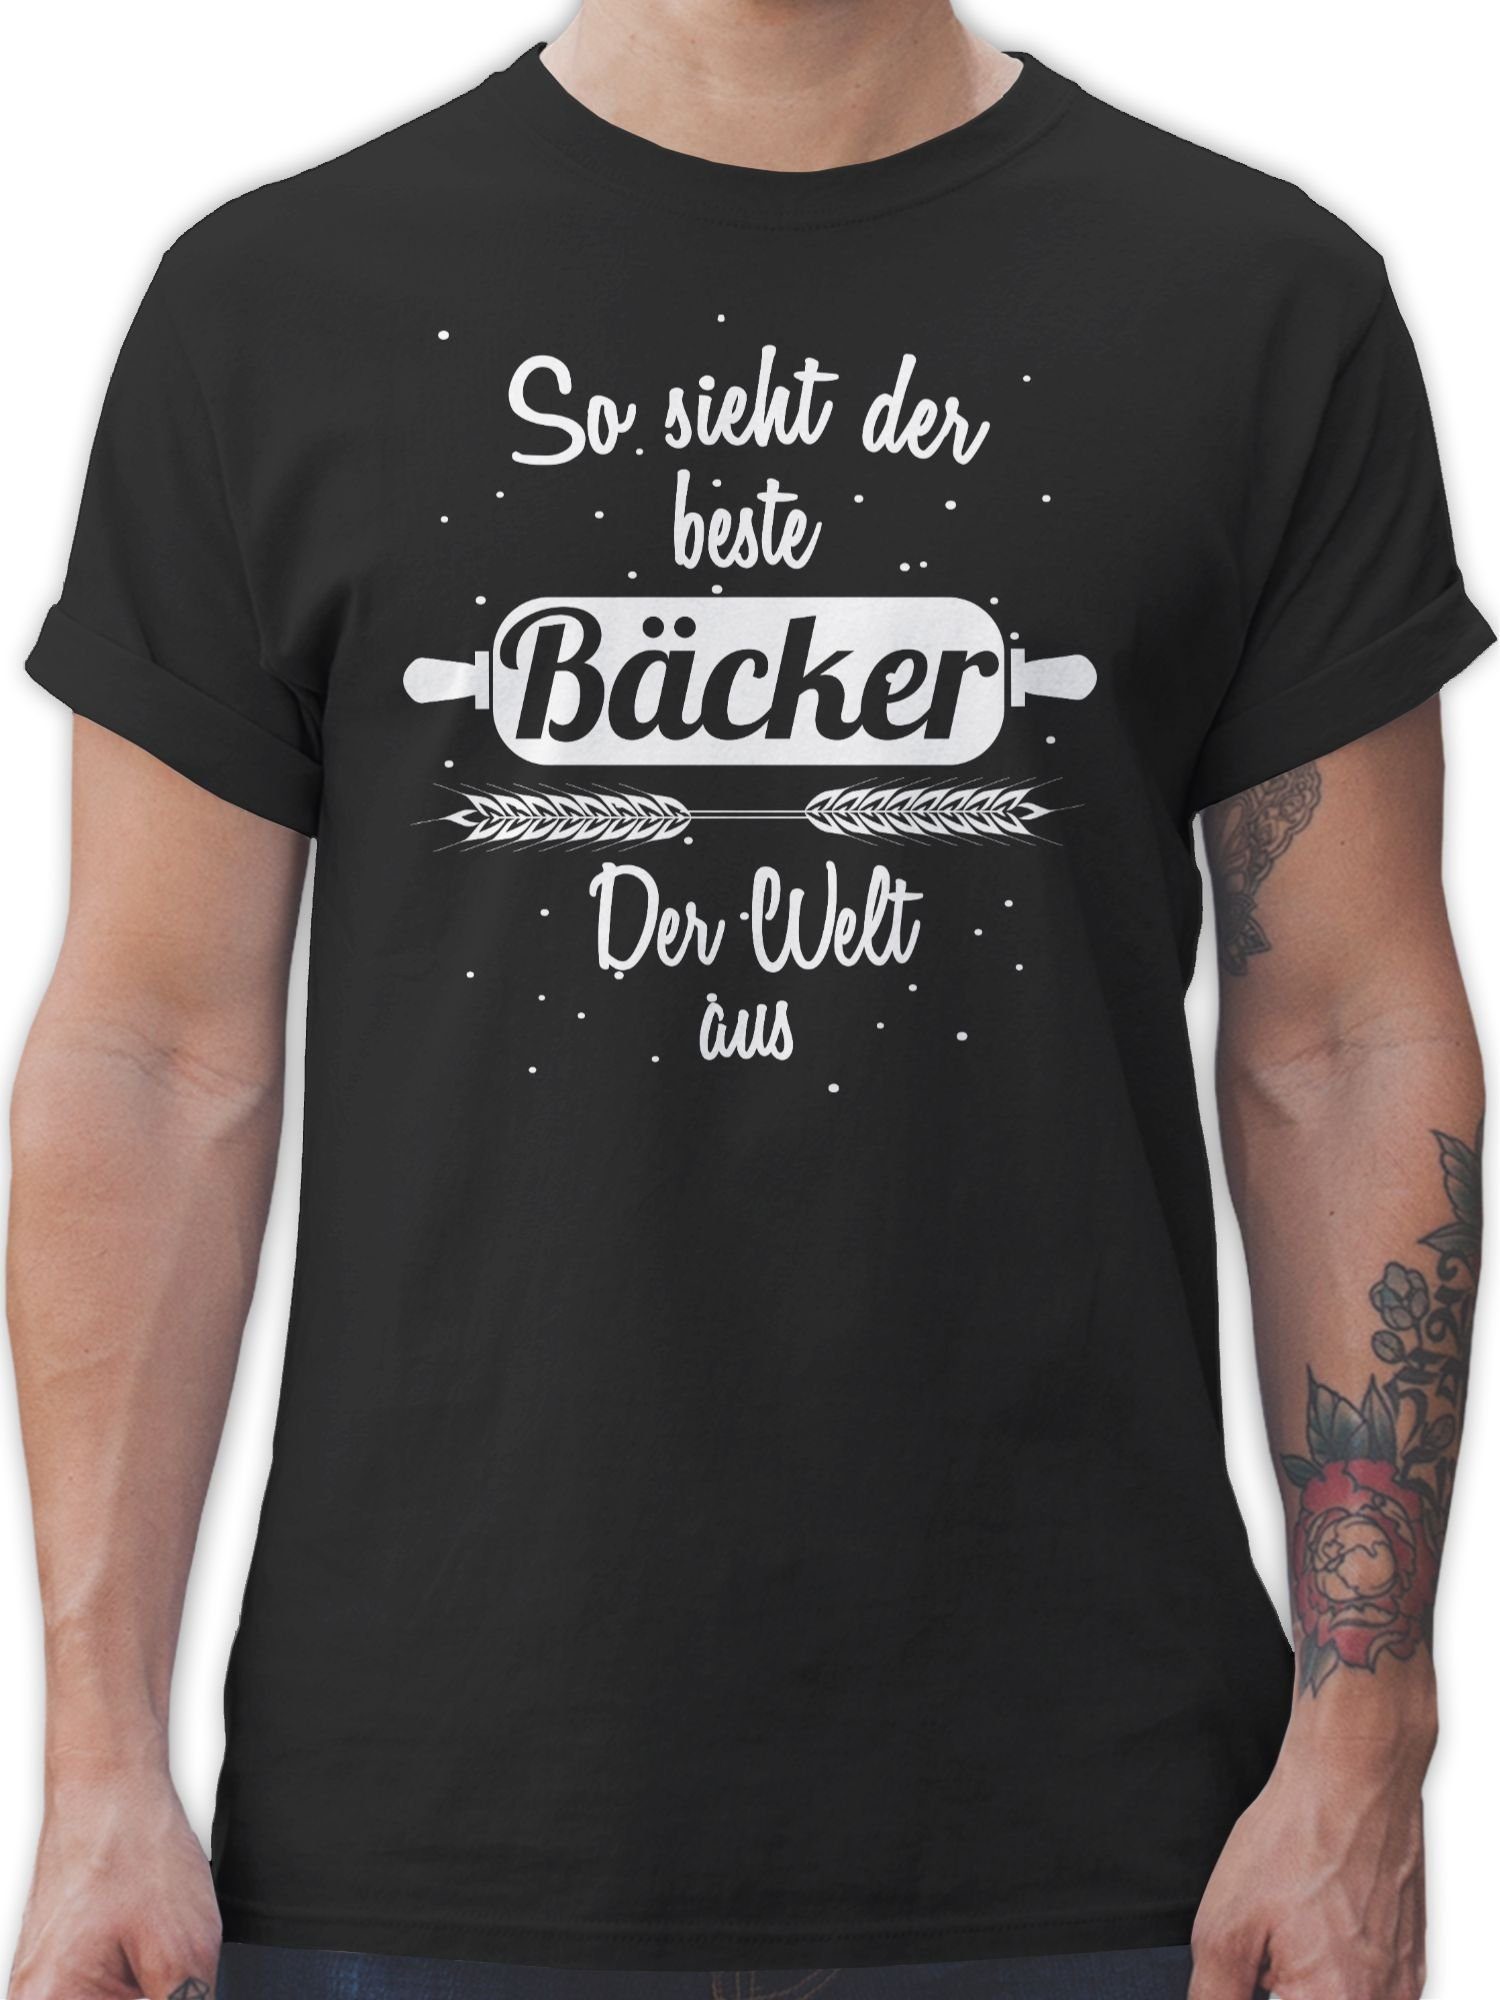 So und Bäcker Job der aus T-Shirt der Schwarz Geschenke 1 Beruf Welt sieht Shirtracer beste